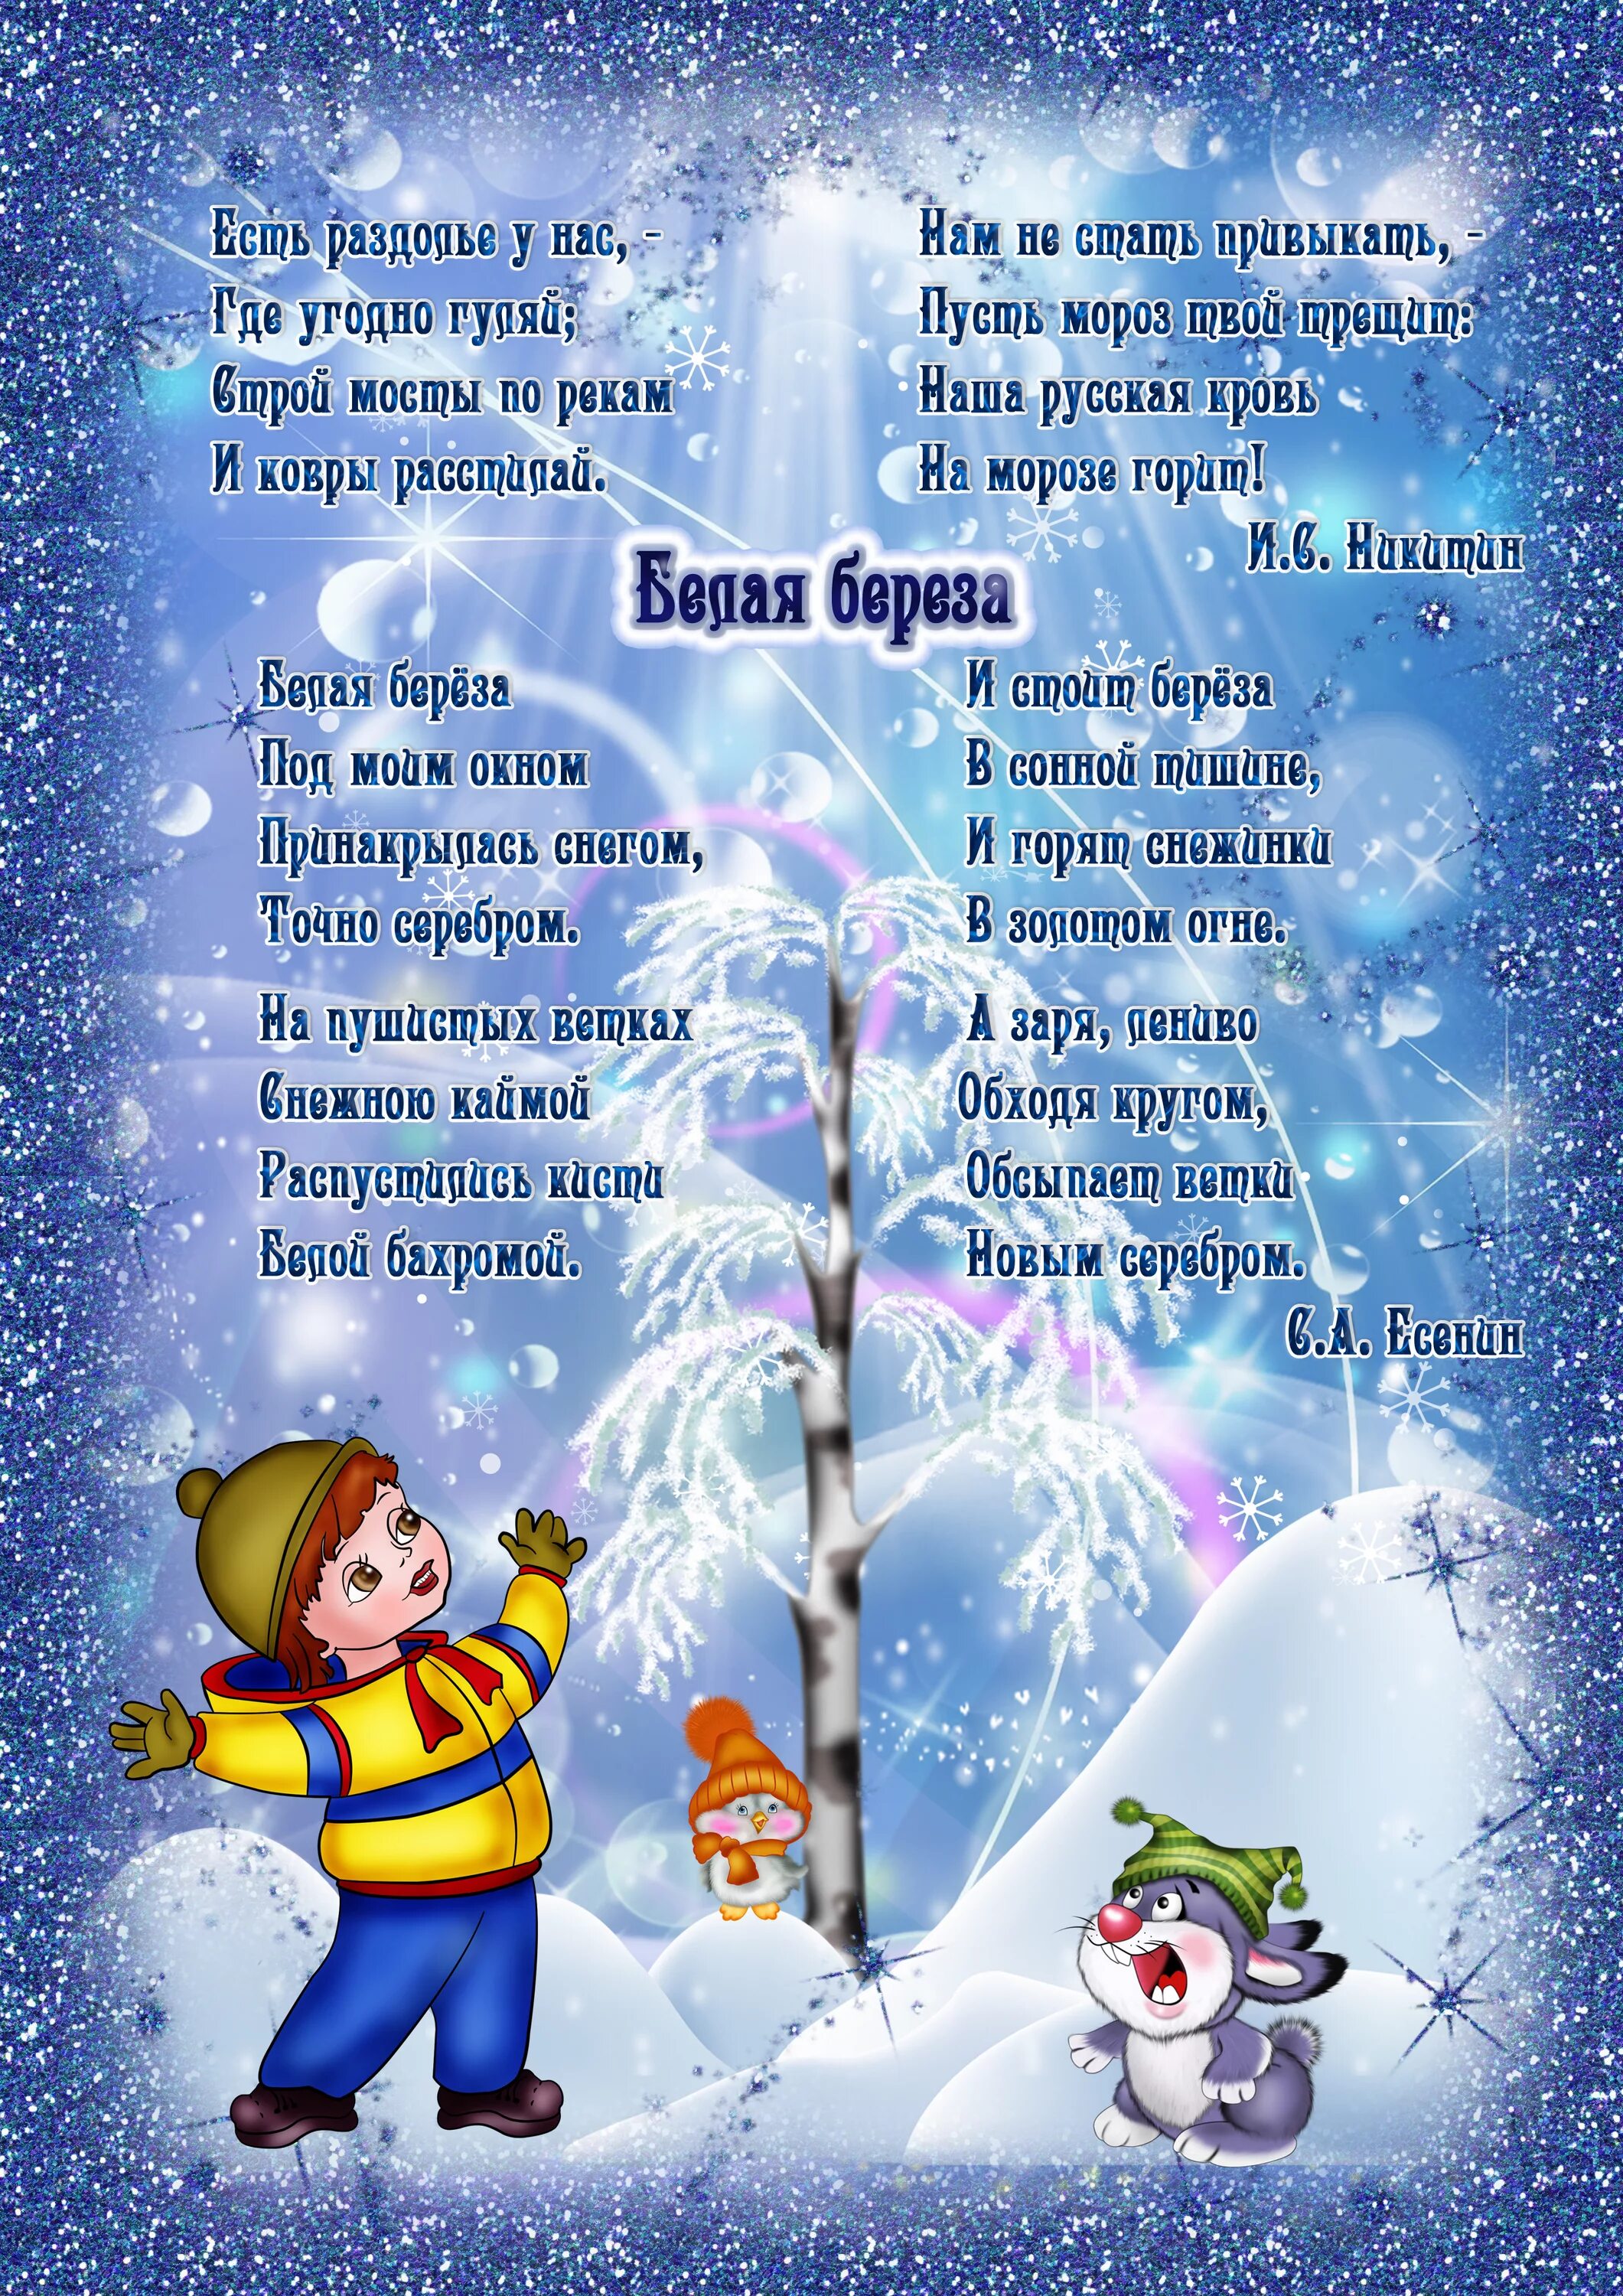 Стихотворение зима полностью. Стихотворение про зиму для детей 6-7 лет для заучивания. Стихи для детей 5 лет для заучивания про зиму. Стихи про зиму для детей 6-7 лет для заучивания. Детские стихи про зиму.